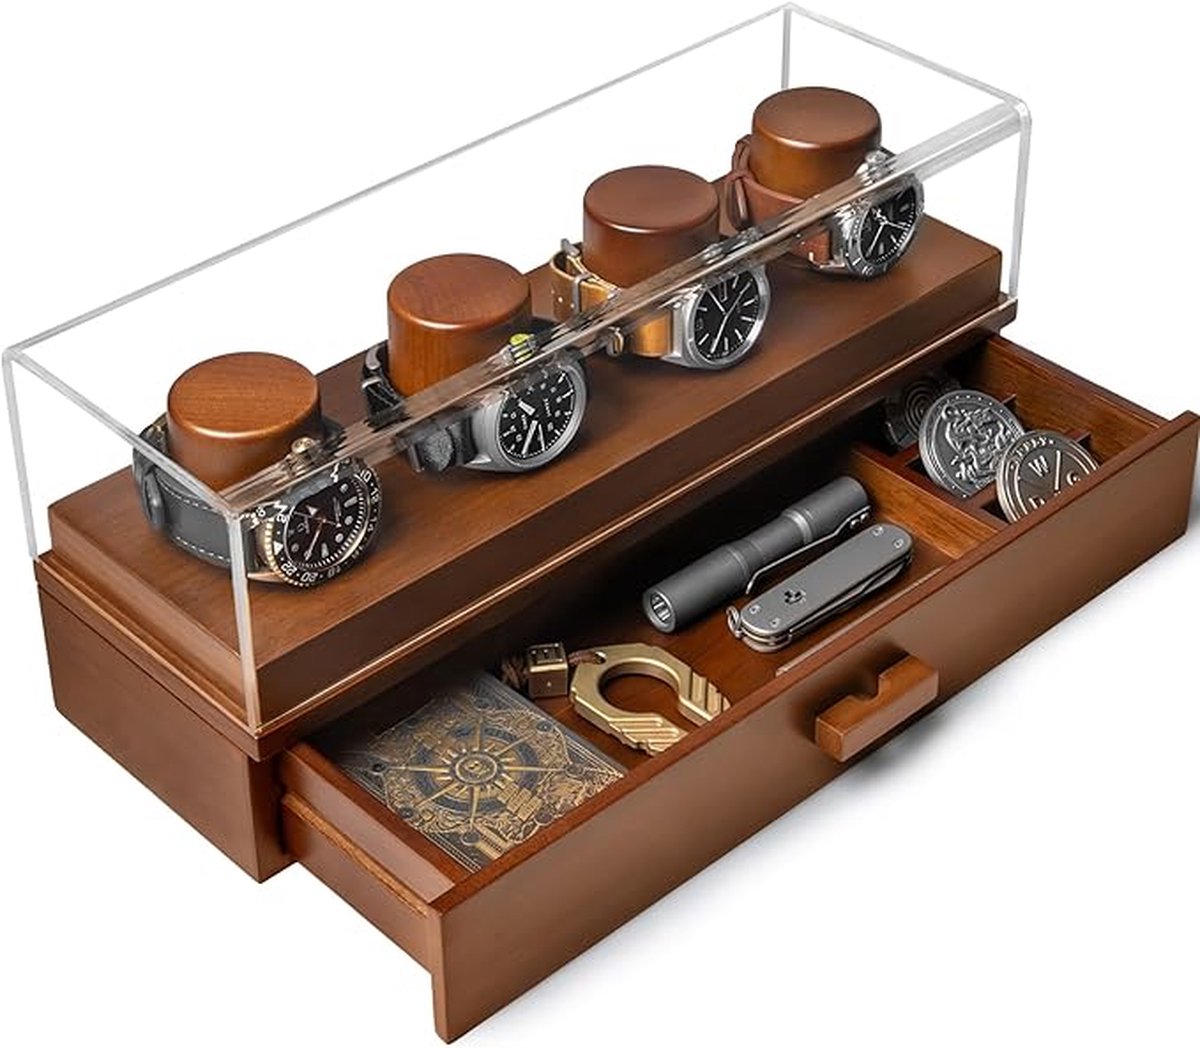 Display Case Horloge Houder - Horlogebox Organizer voor Mannen met Display en Lade voor Accessoires - Houten Horloge Cases voor Mannen - Mens Horloge Box - Gift voor Mannen Vriendje